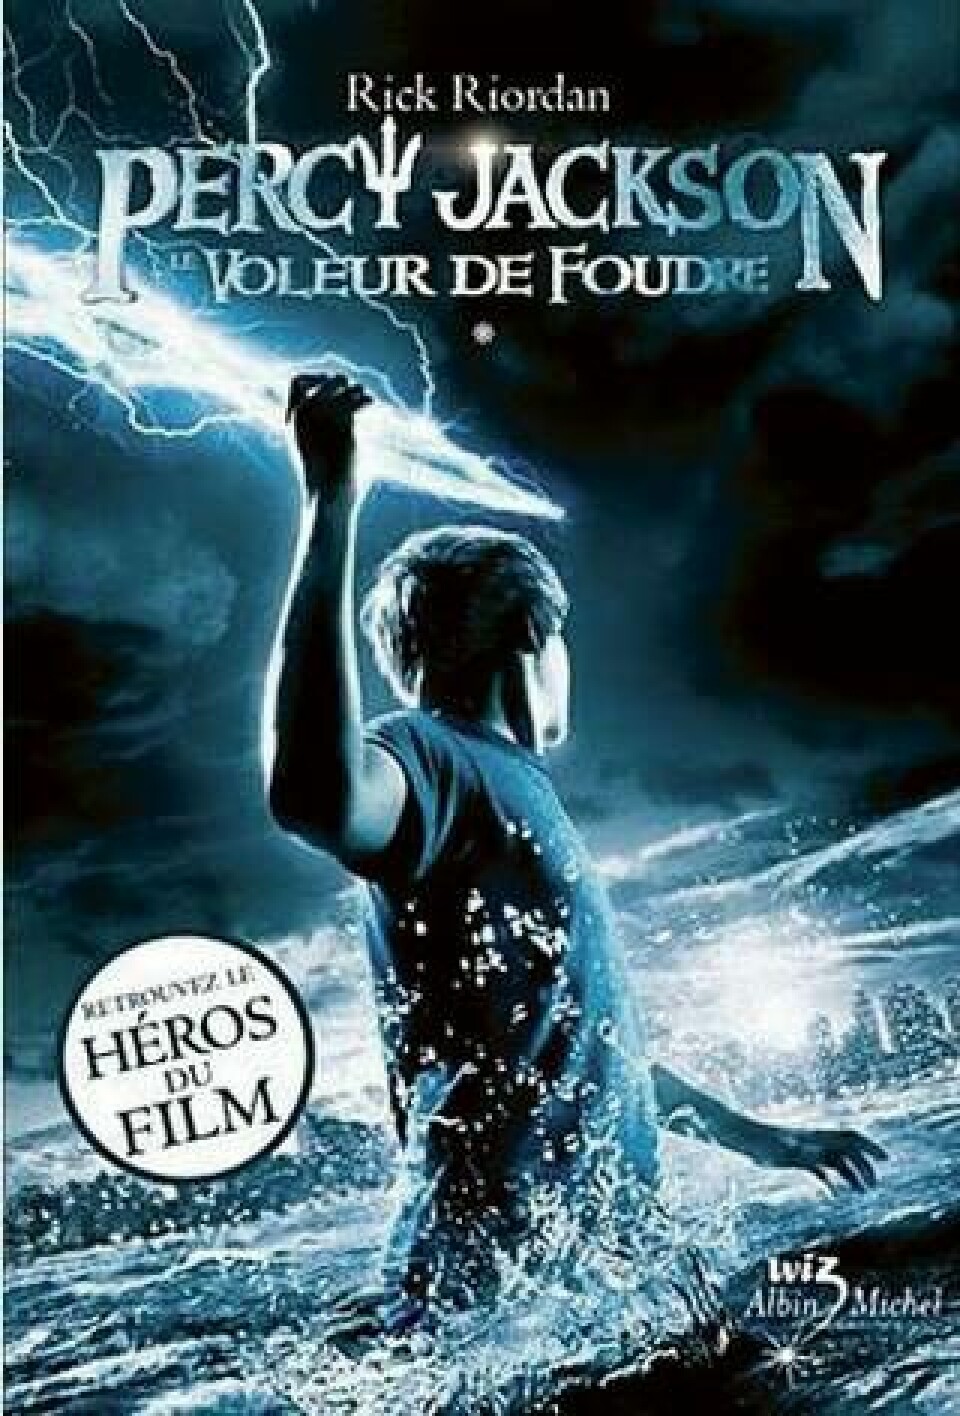 Percy Jackson – The Lightning Thief av Rick Riordan 2005, 480 sidor. Finns även som film på dvd.